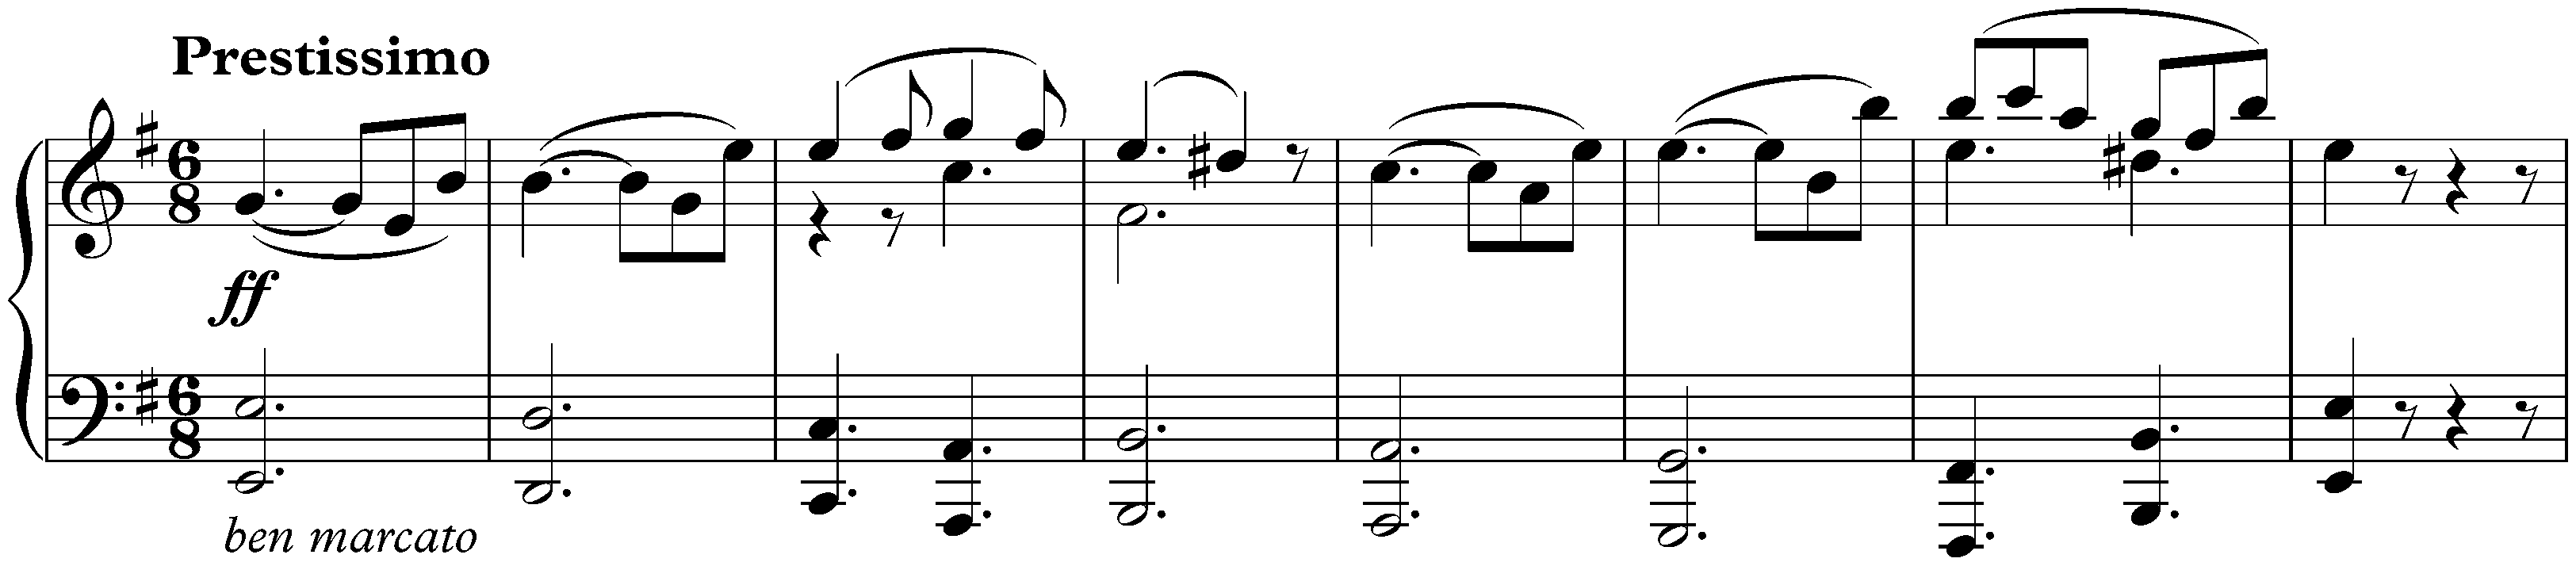 Sonata no. 30 in E major, op. 109; 2. Prestissimo